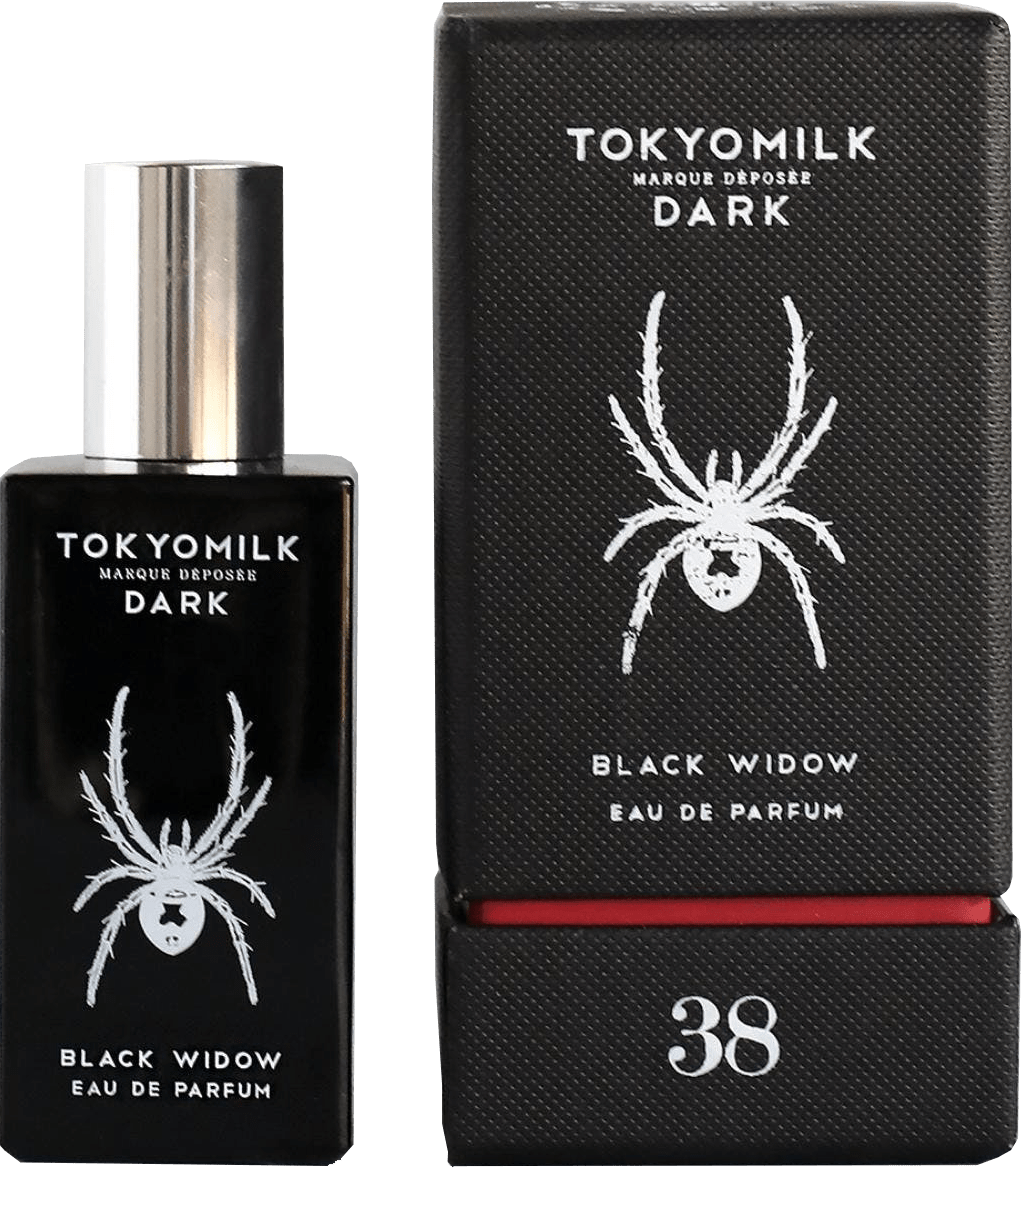 Tokyomilk Dark EdP Black Widow No. 38 ohne Hintergrund